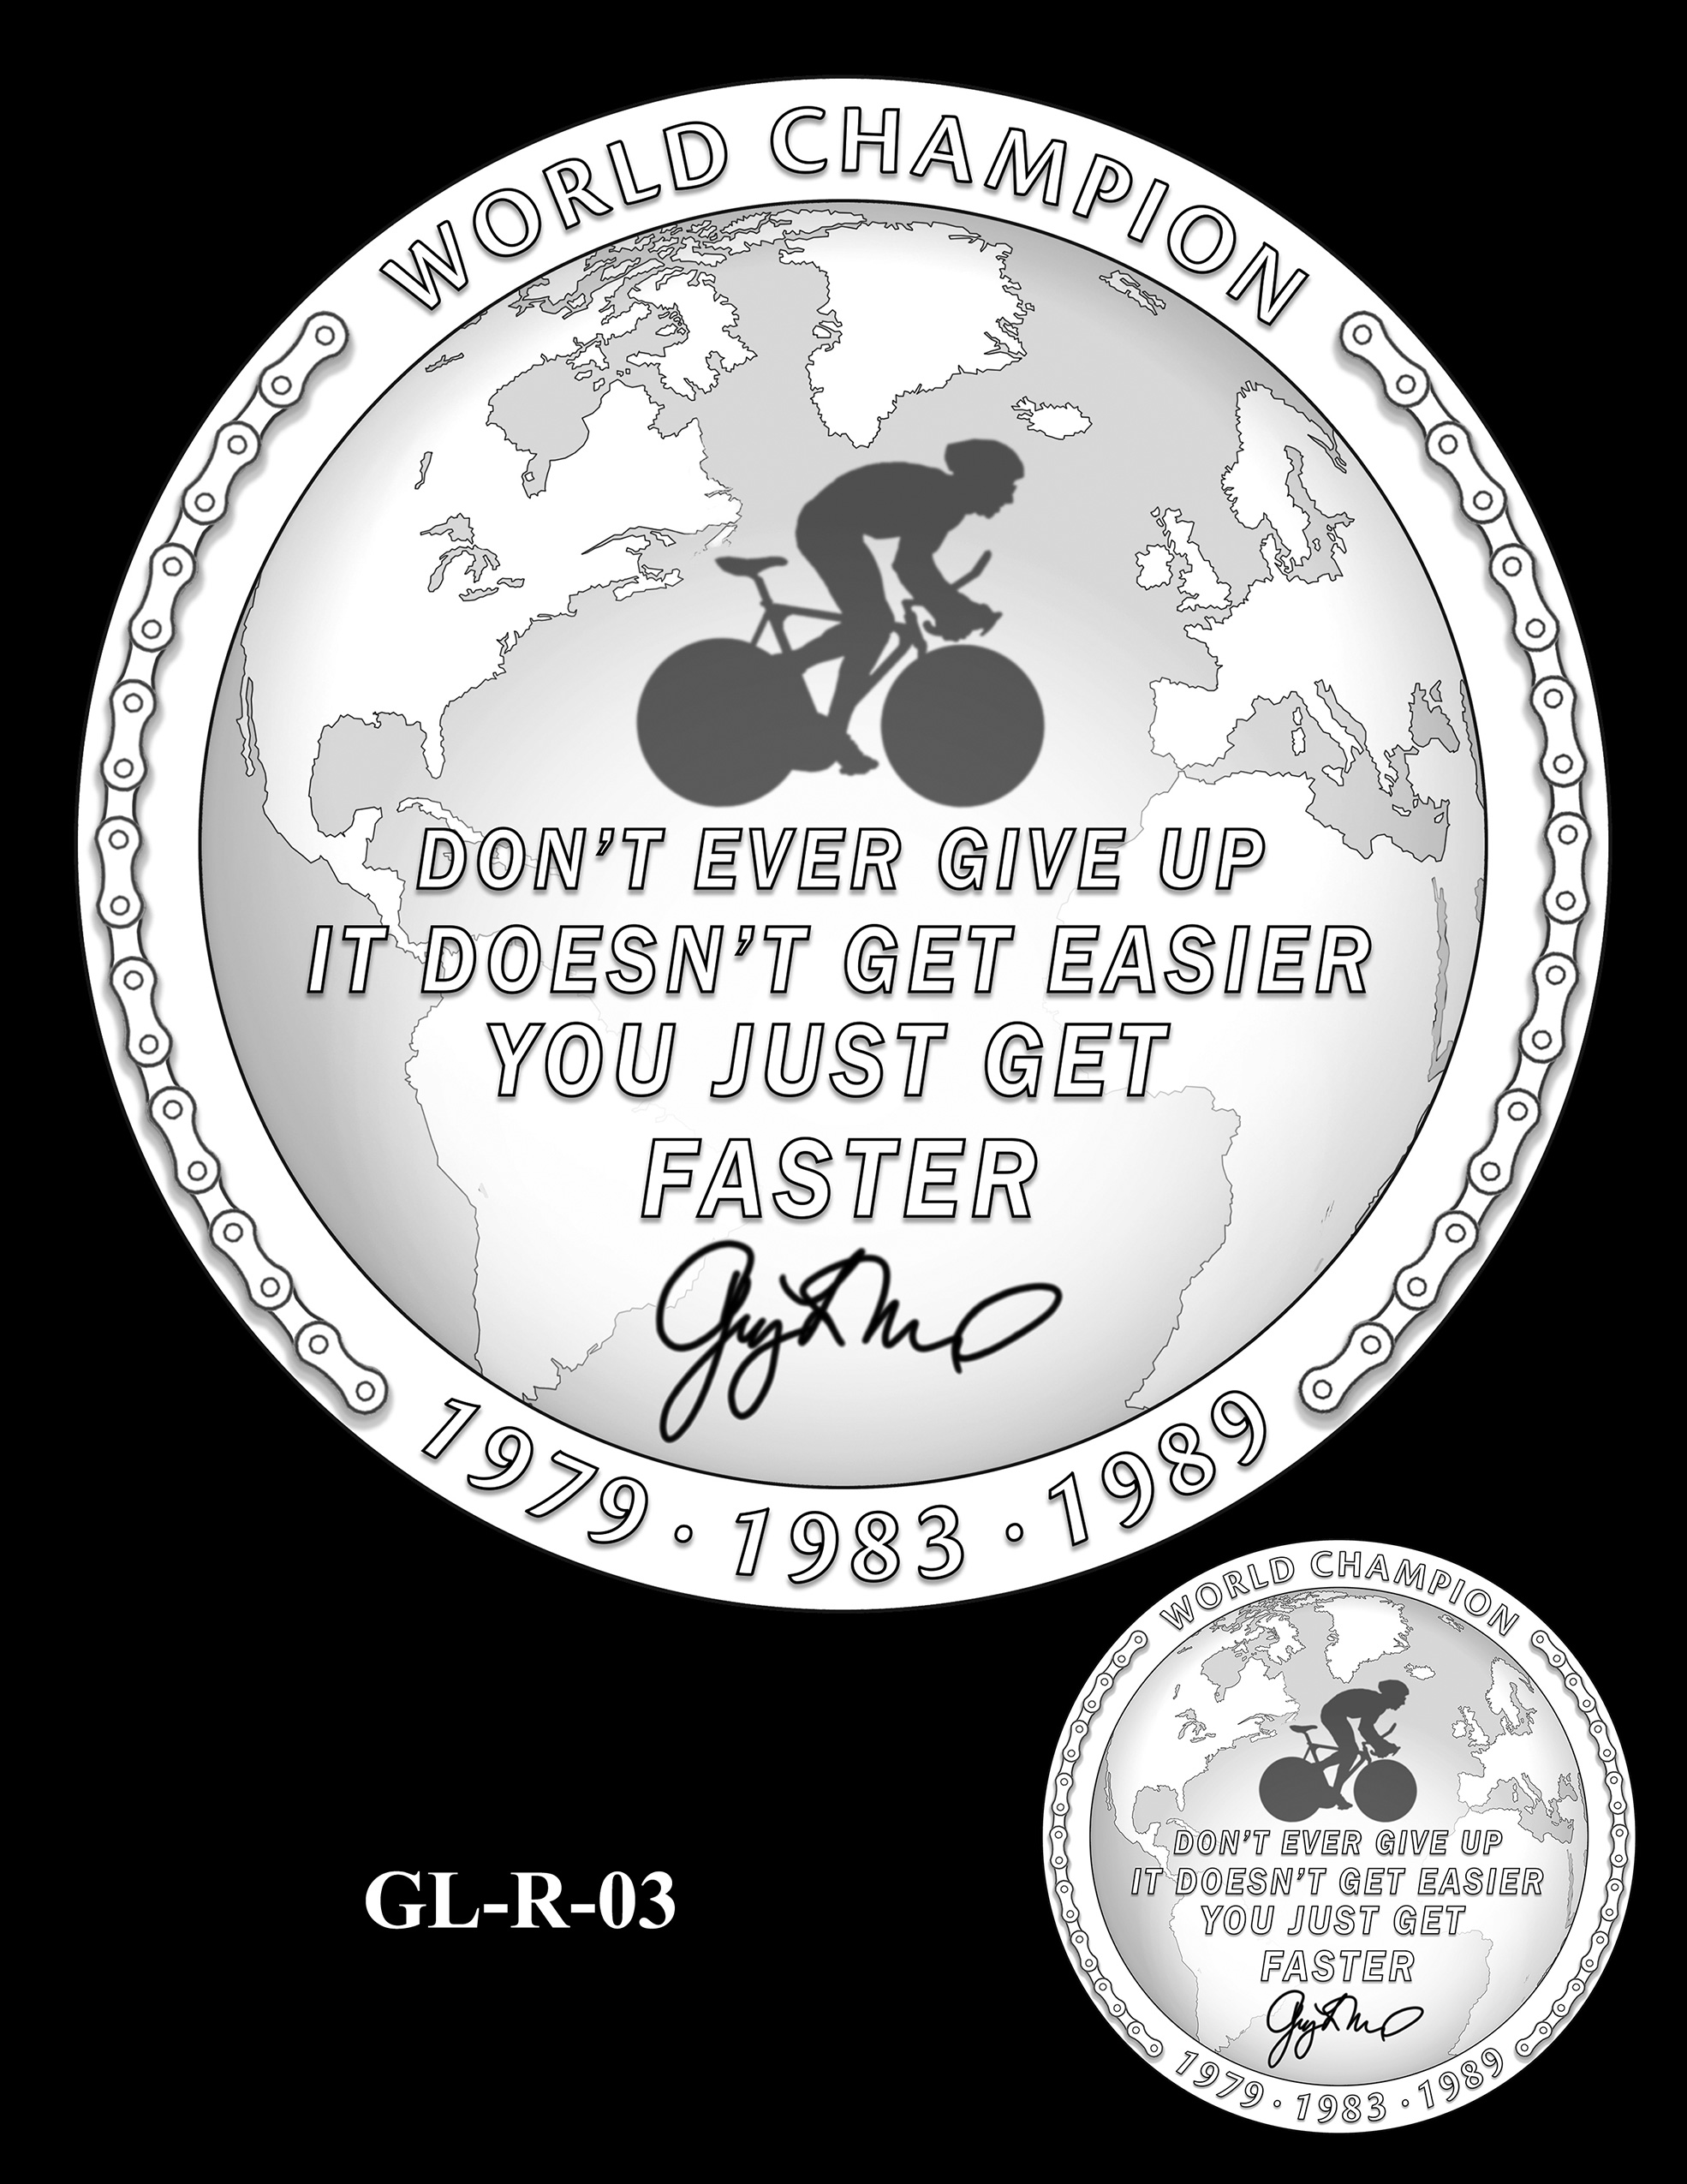 GL-R-03 -- Greg LeMond Congressional Gold Medal